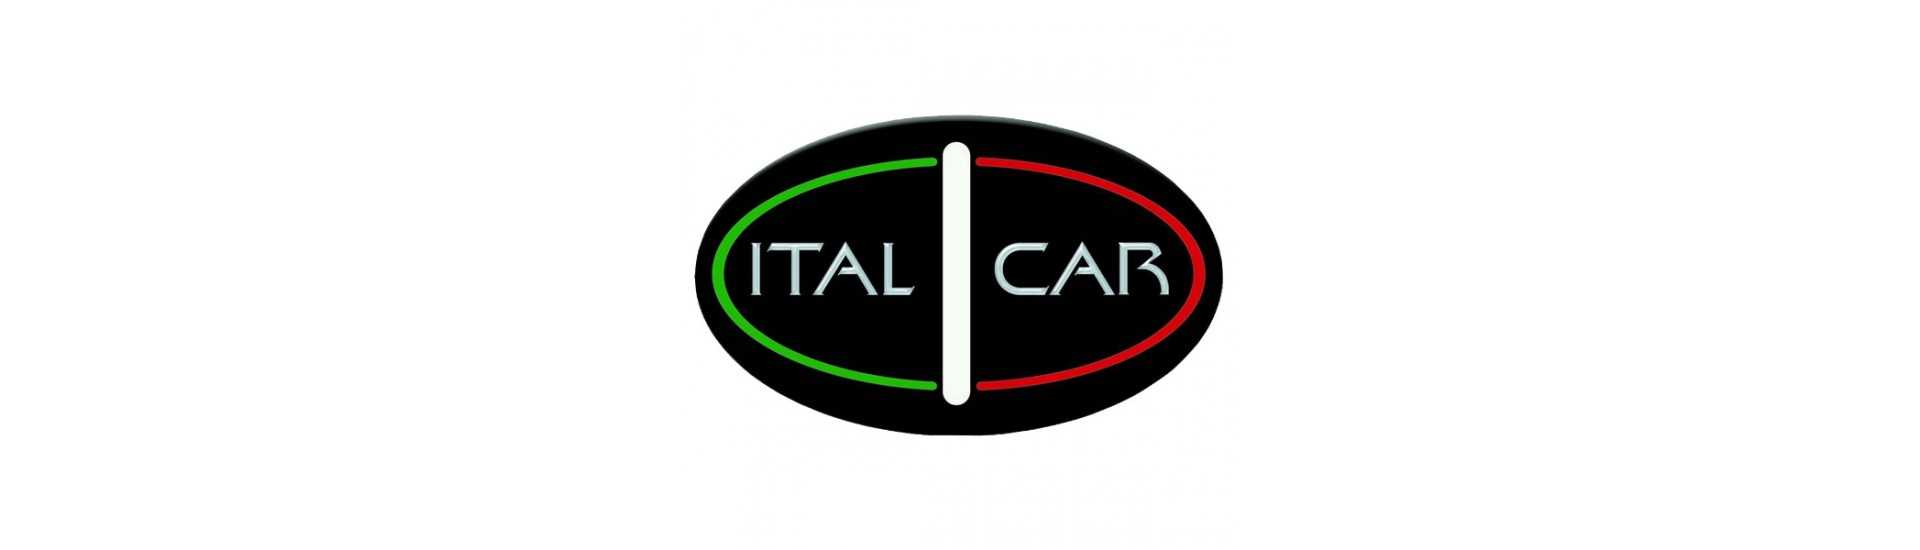 Dörrfönster till bästa pris för bil utan tillstånd Italcar